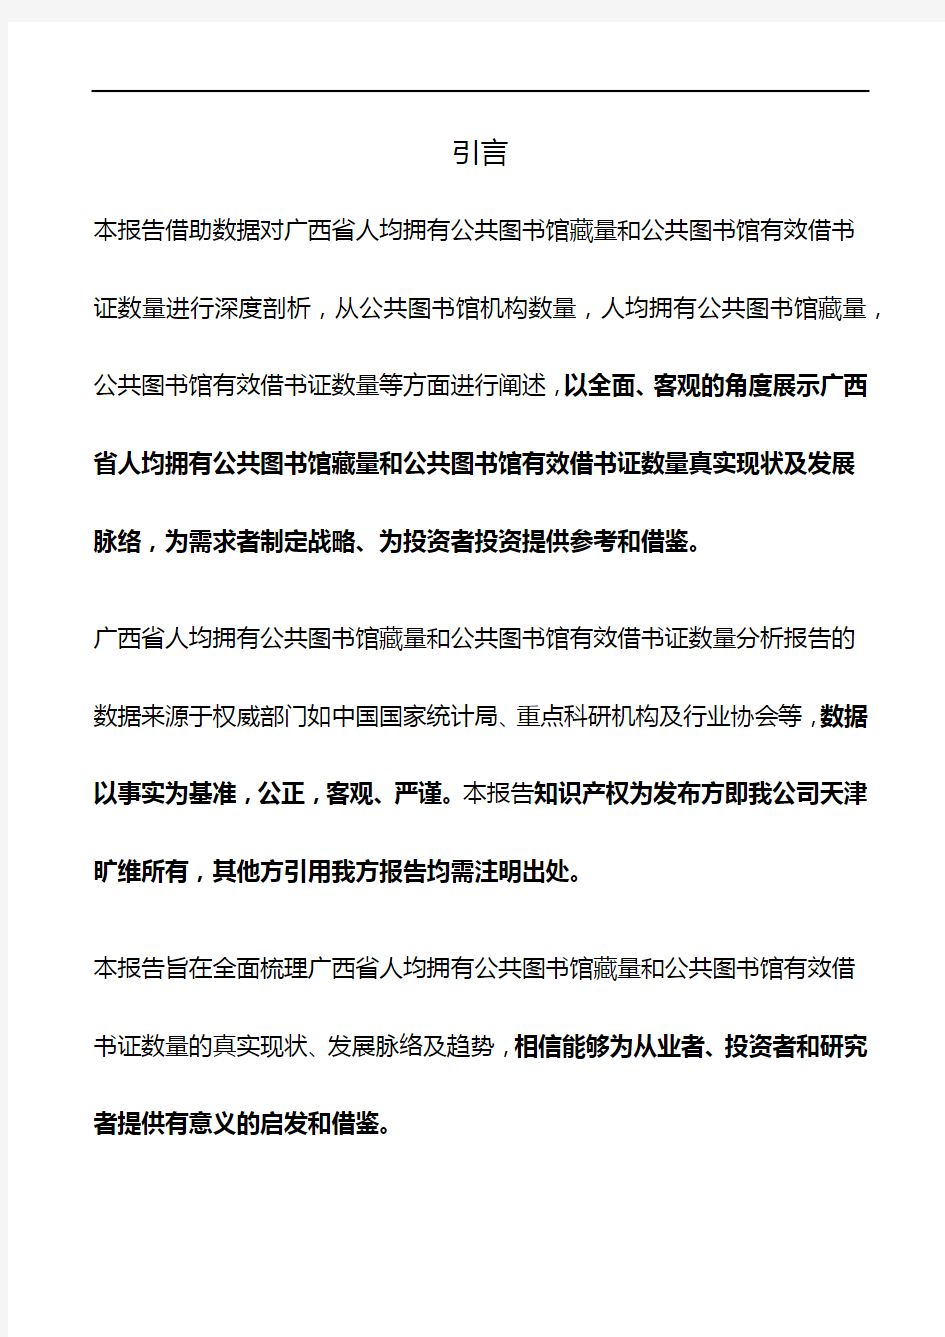 广西省人均拥有公共图书馆藏量和公共图书馆有效借书证数量3年数据分析报告2019版